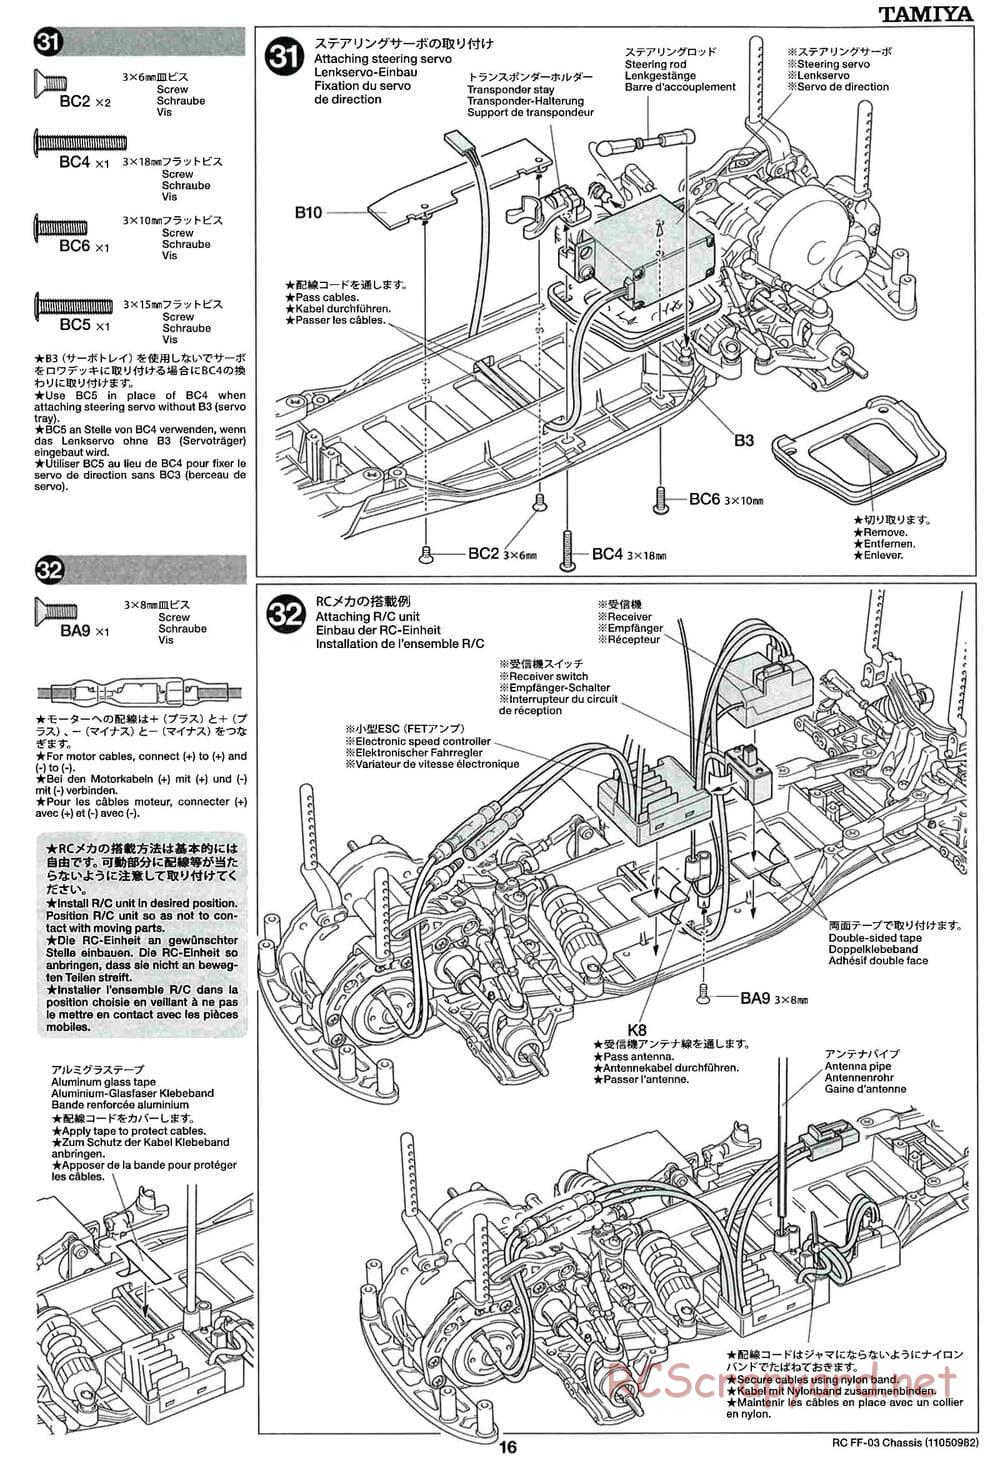 Tamiya - Castrol Honda Civic VTi - FF-03 Chassis - Manual - Page 16